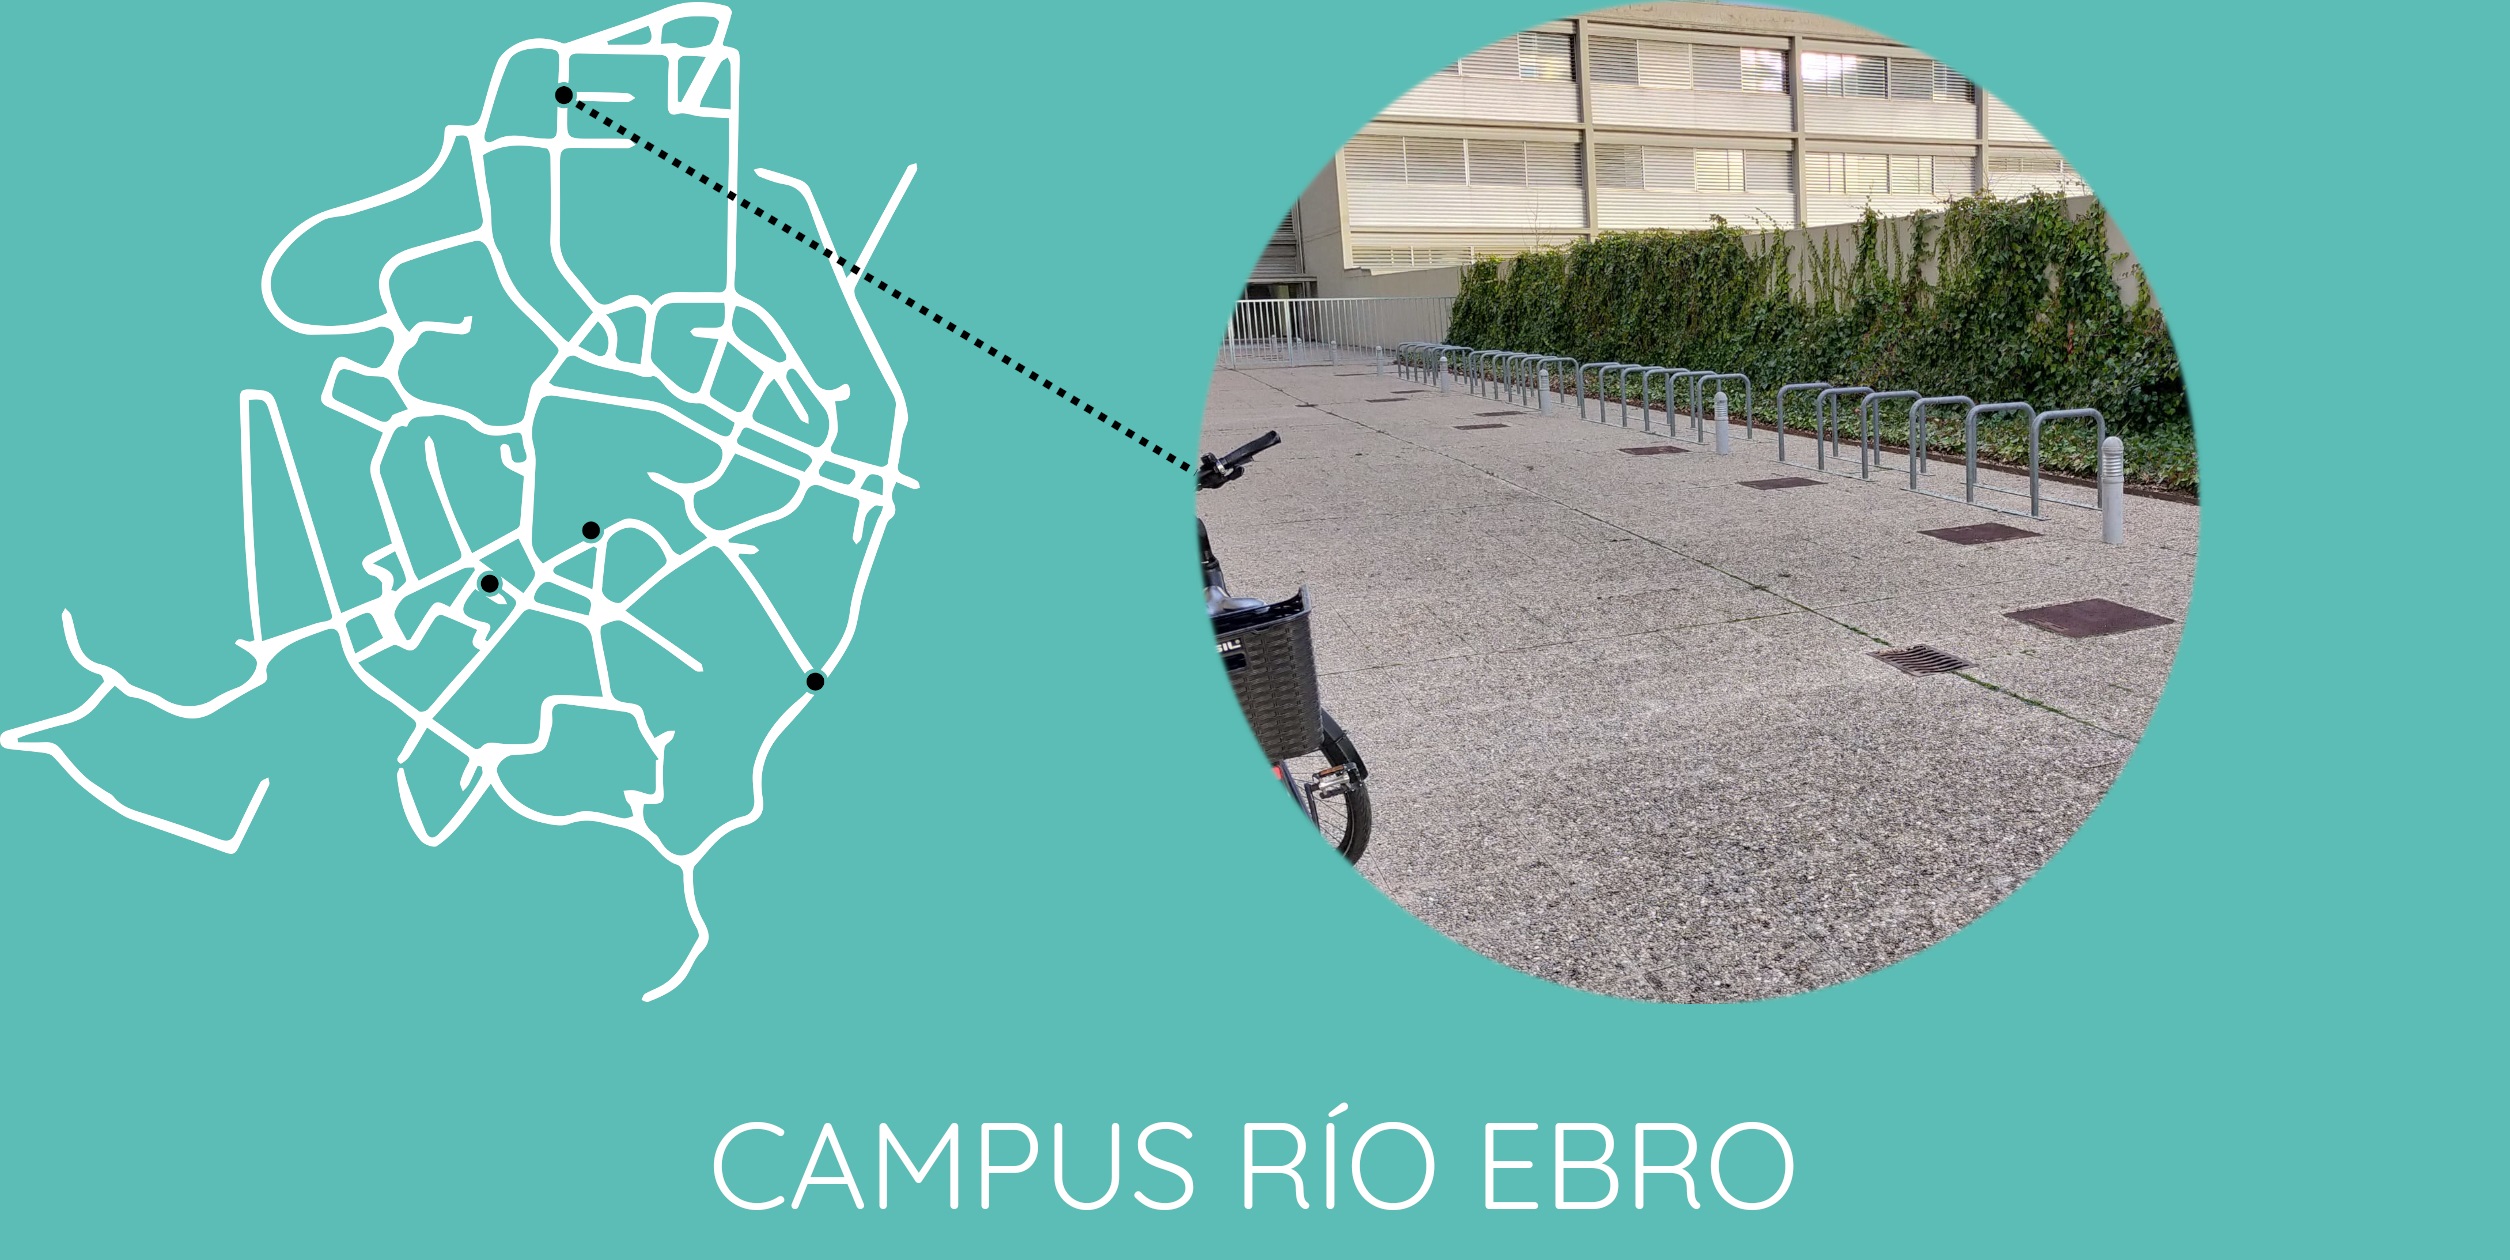 Campus Río Ebro